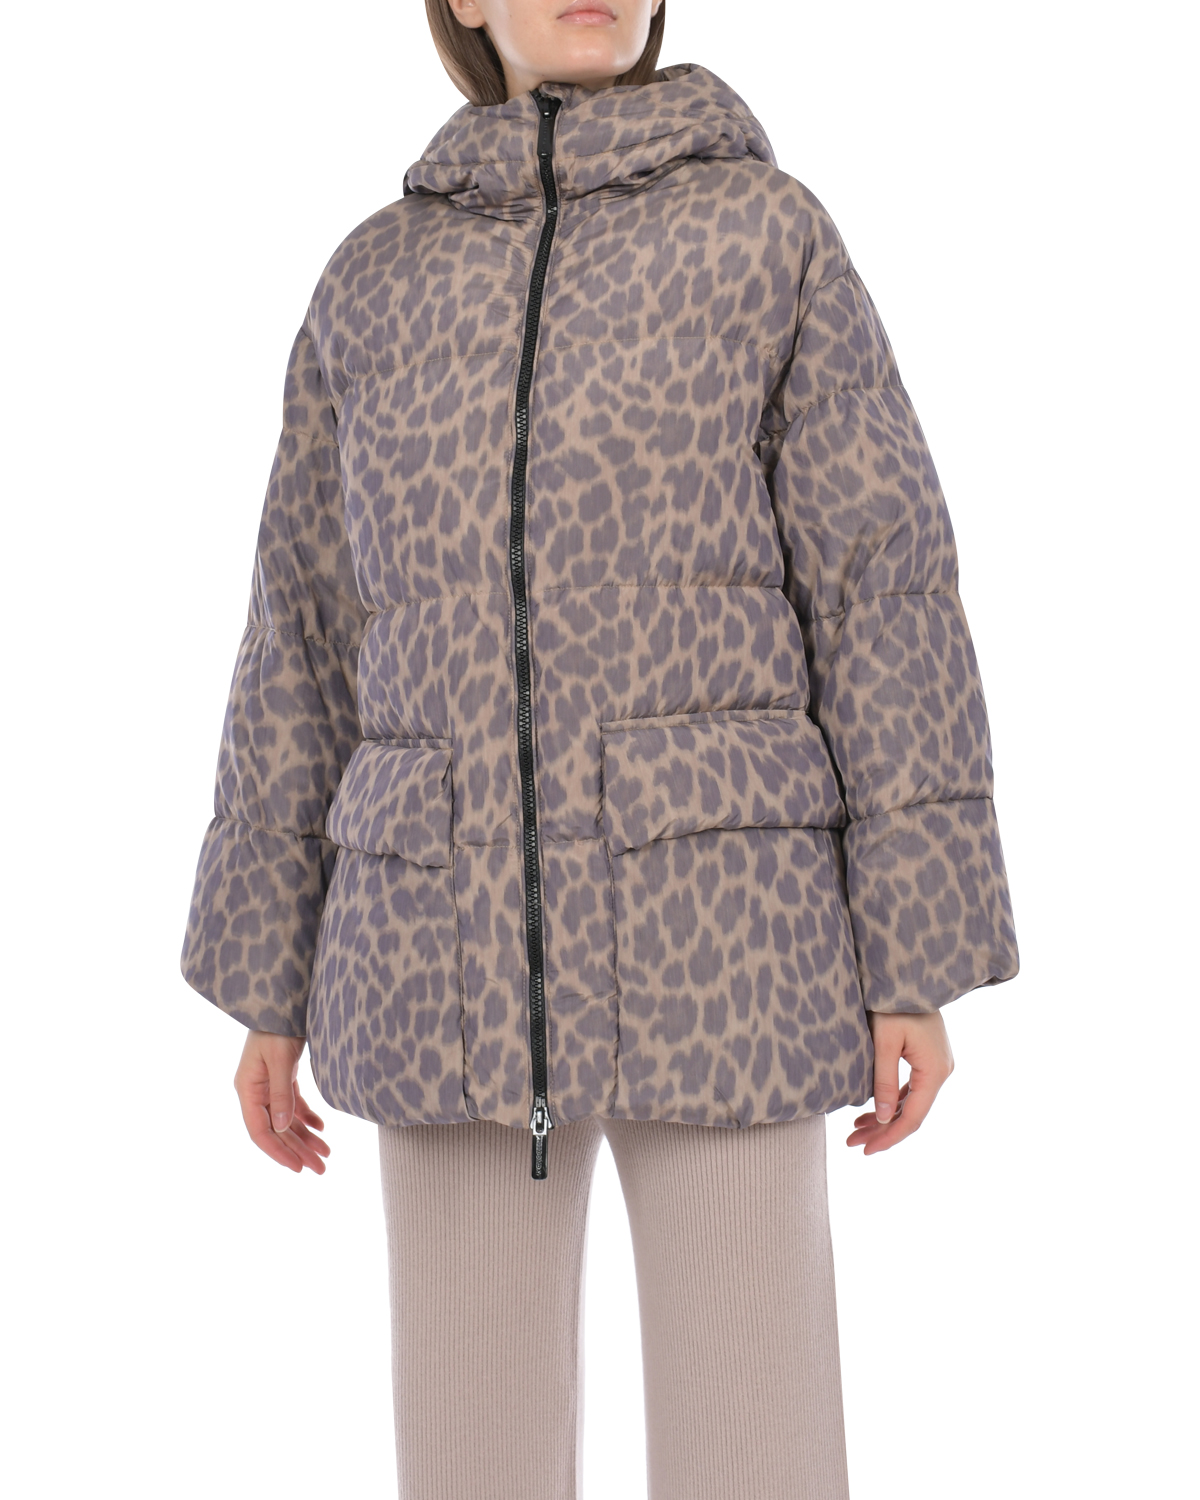 Пуховая куртка с леопардовым принтом Freedomday, размер 38, цвет бежевый - фото 5